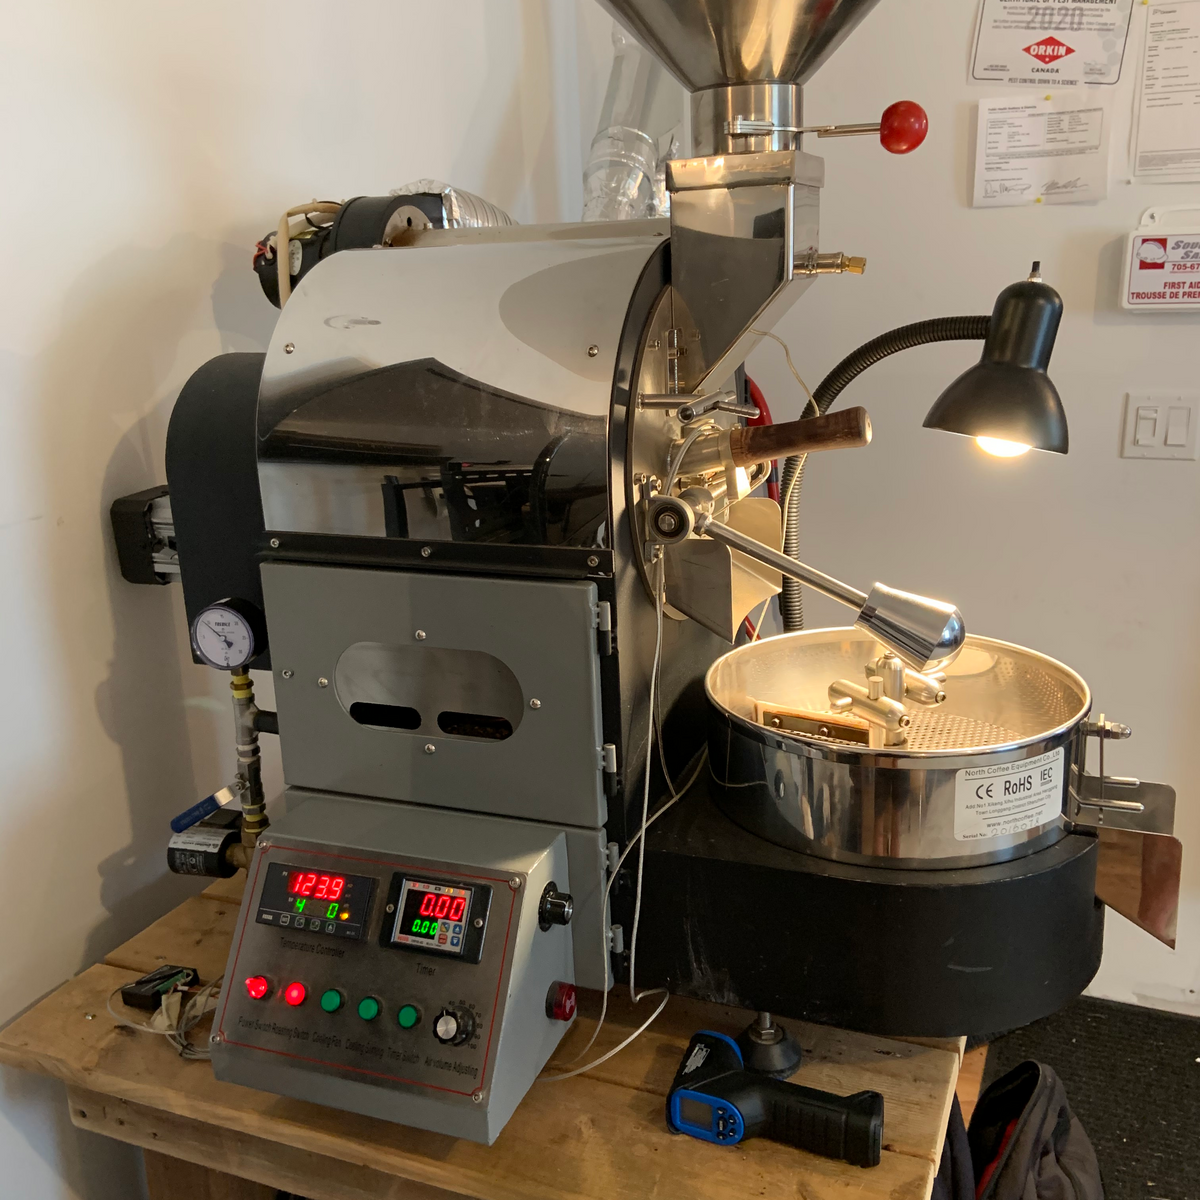 Pour Over Coffee Brewer Set - Prestogeorge Coffee & Tea